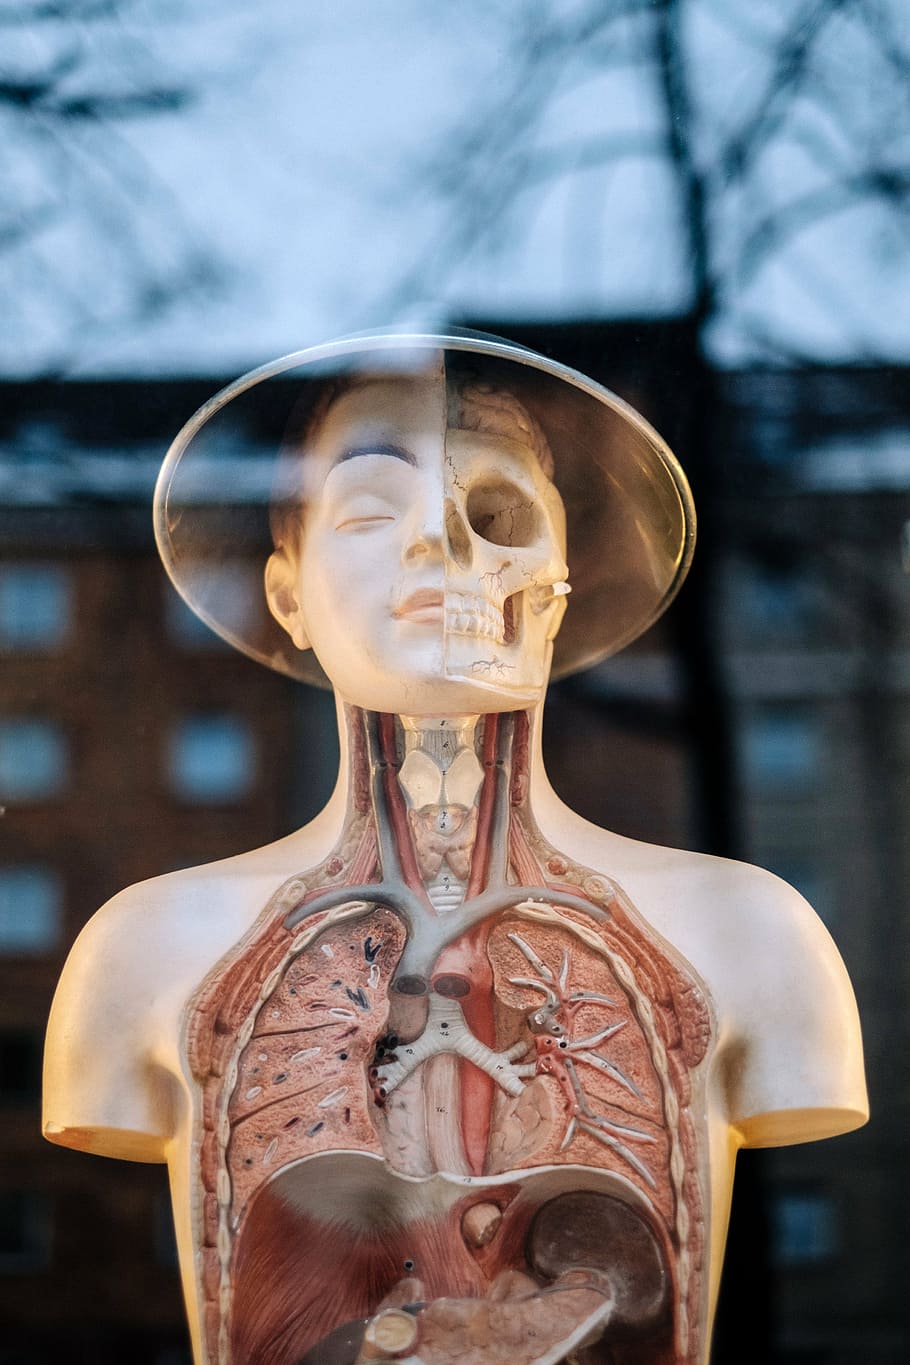 人体解剖学マネキン, 人間, 解剖学, モデル, 上半身, 構造, 医療, 臓器, スケルトン, 肩